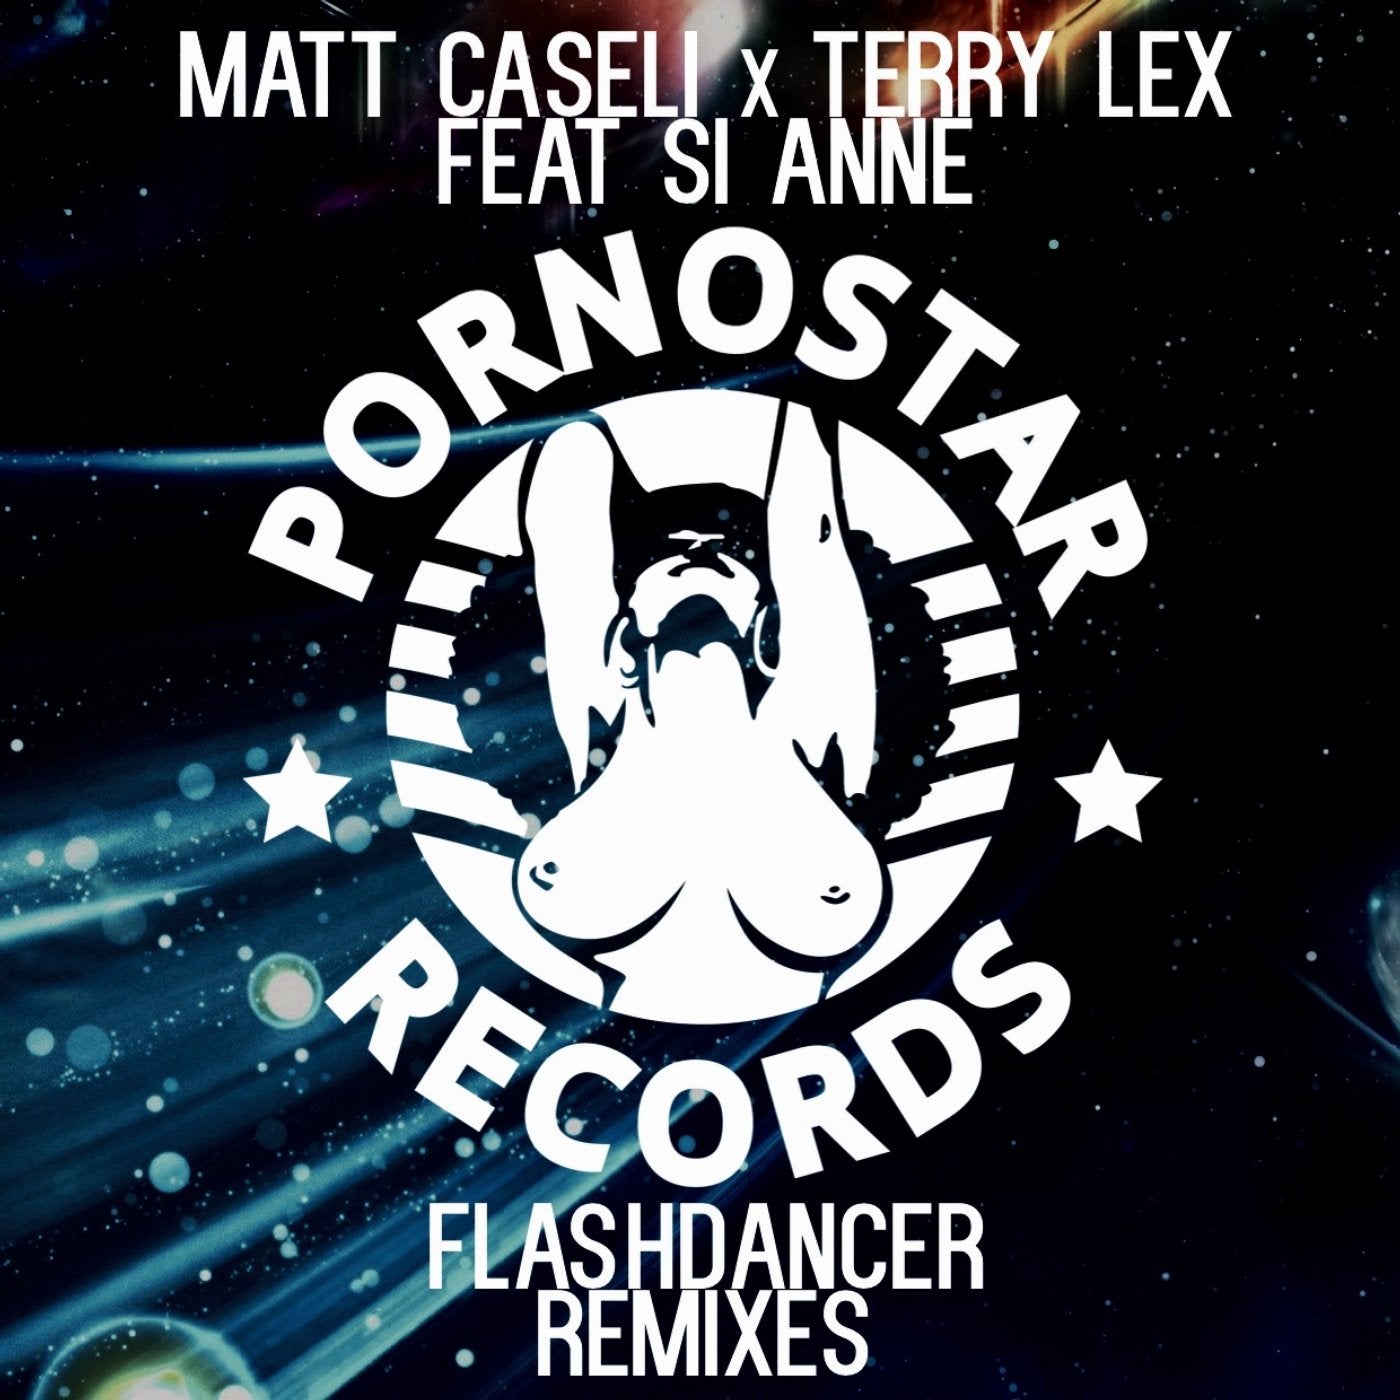 Matt Caseli, Terry Lex Feat Si Anne - Flashdance Remixes